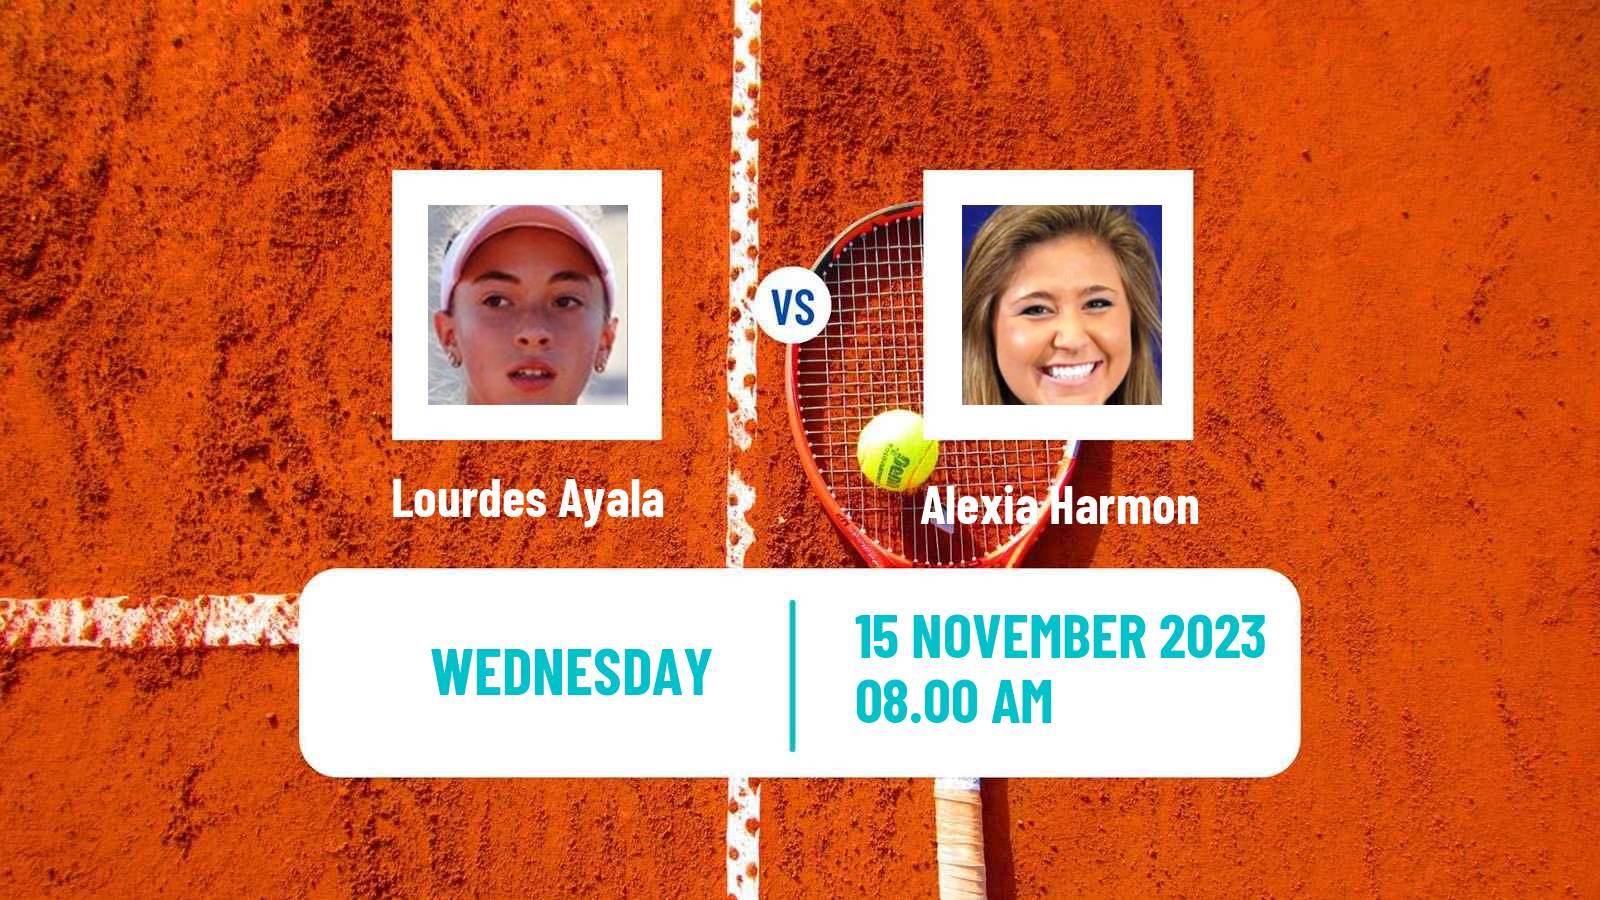 Tennis ITF W15 Buenos Aires 2 Women Lourdes Ayala - Alexia Harmon